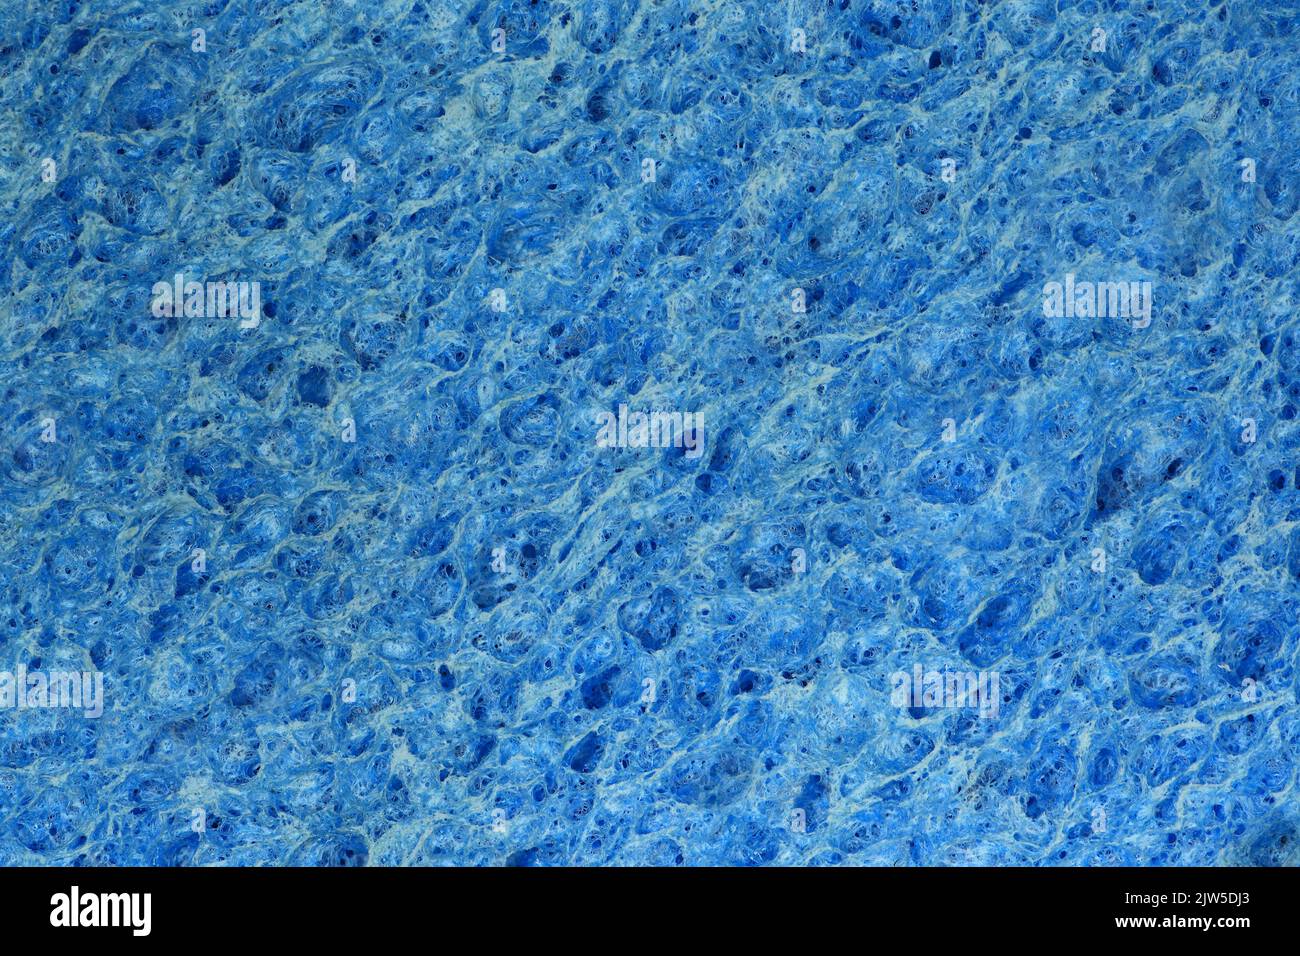 Un primer plano extremo de una esponja seca azul para lavar platos de cocina colocada plana y recta Foto de stock